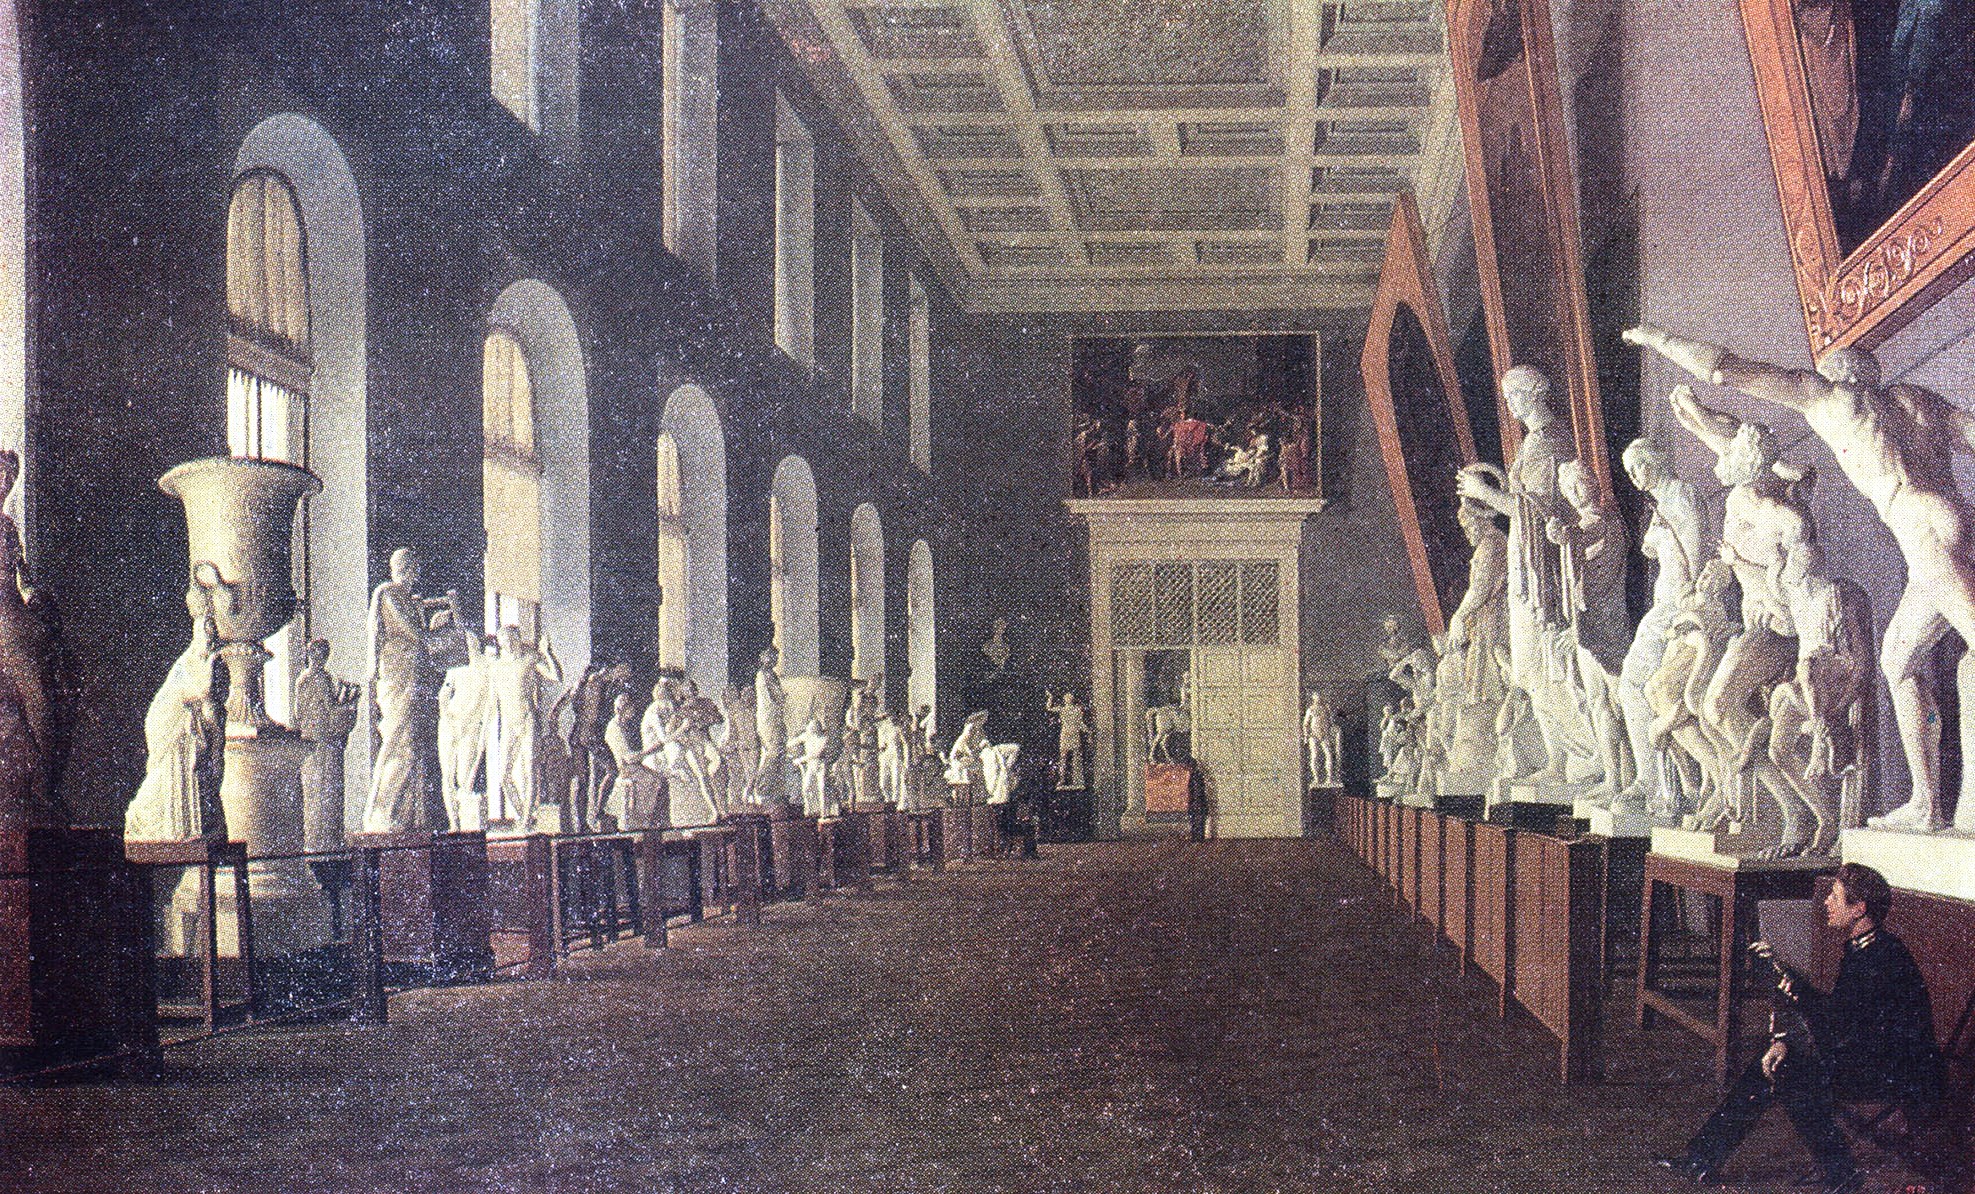 Г. К. Михайлов. "Академия художеств. Античная галерея". 1836.